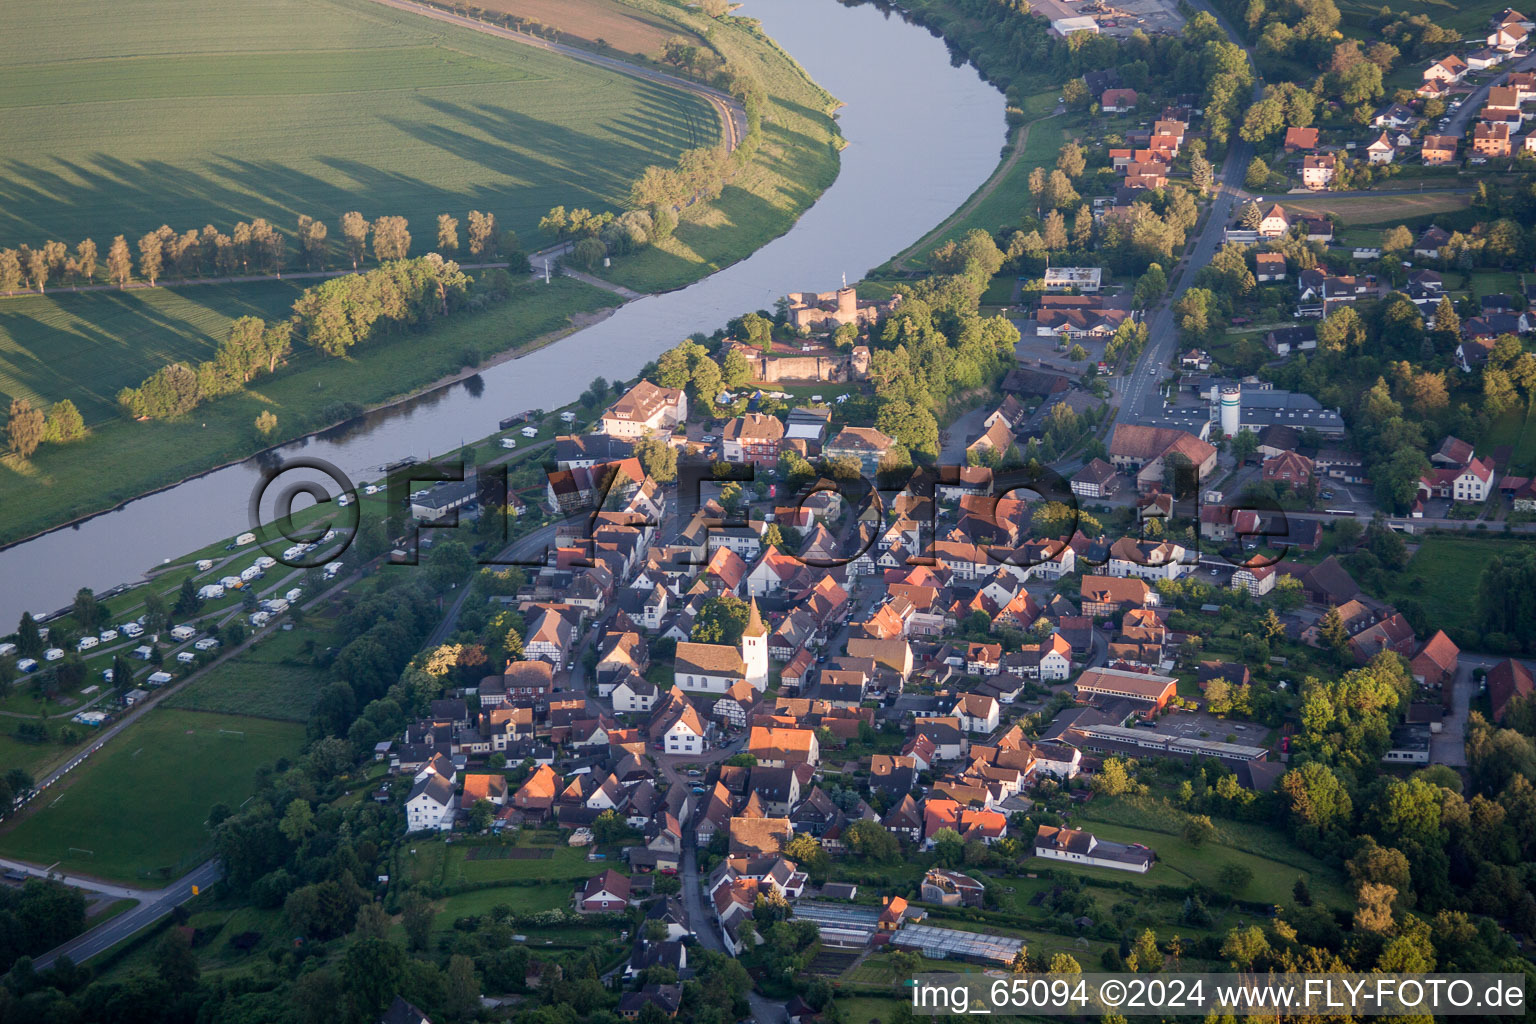 Ortskern am Uferbereich des Weser - Flußverlaufes in Polle im Bundesland Niedersachsen, Deutschland